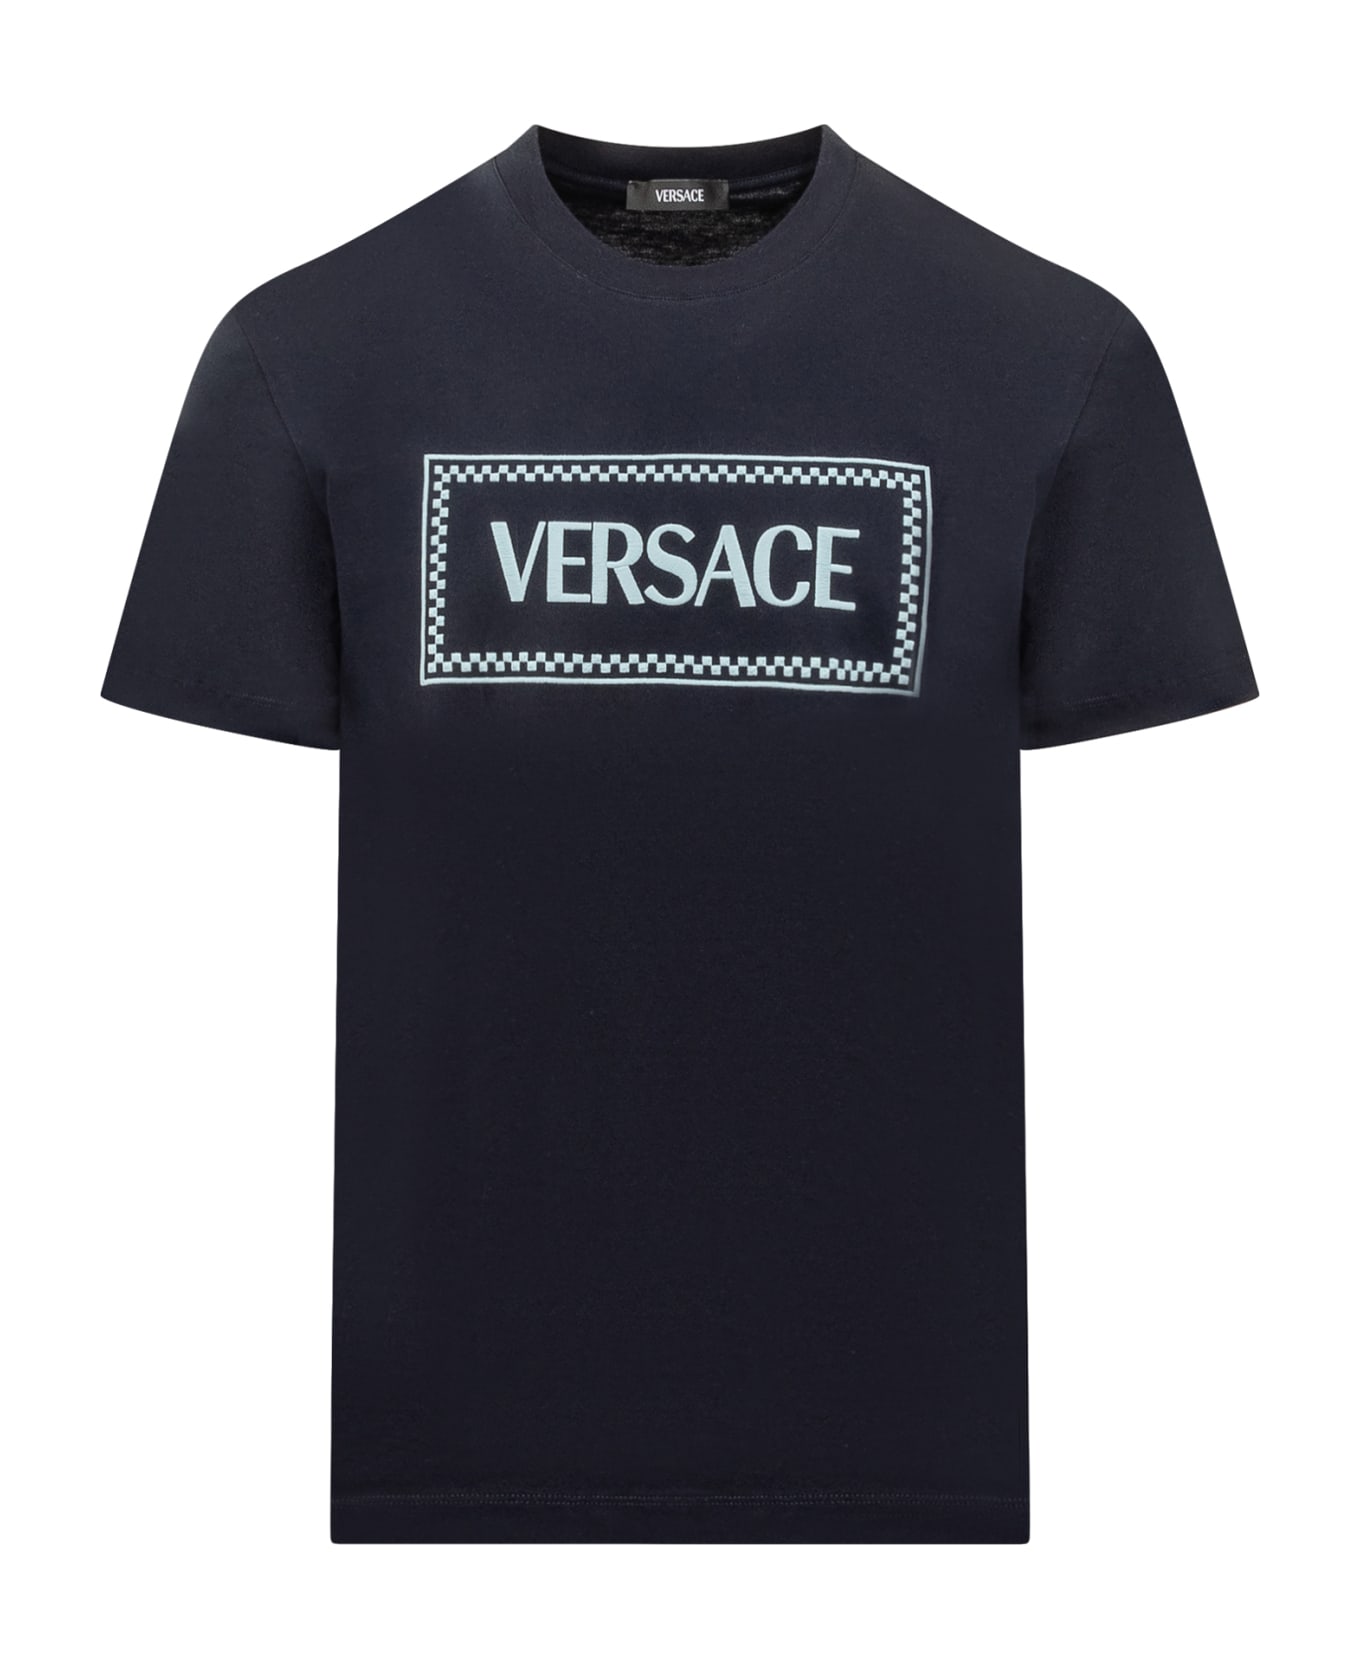 Versace T-shirt - NAVY BLUE